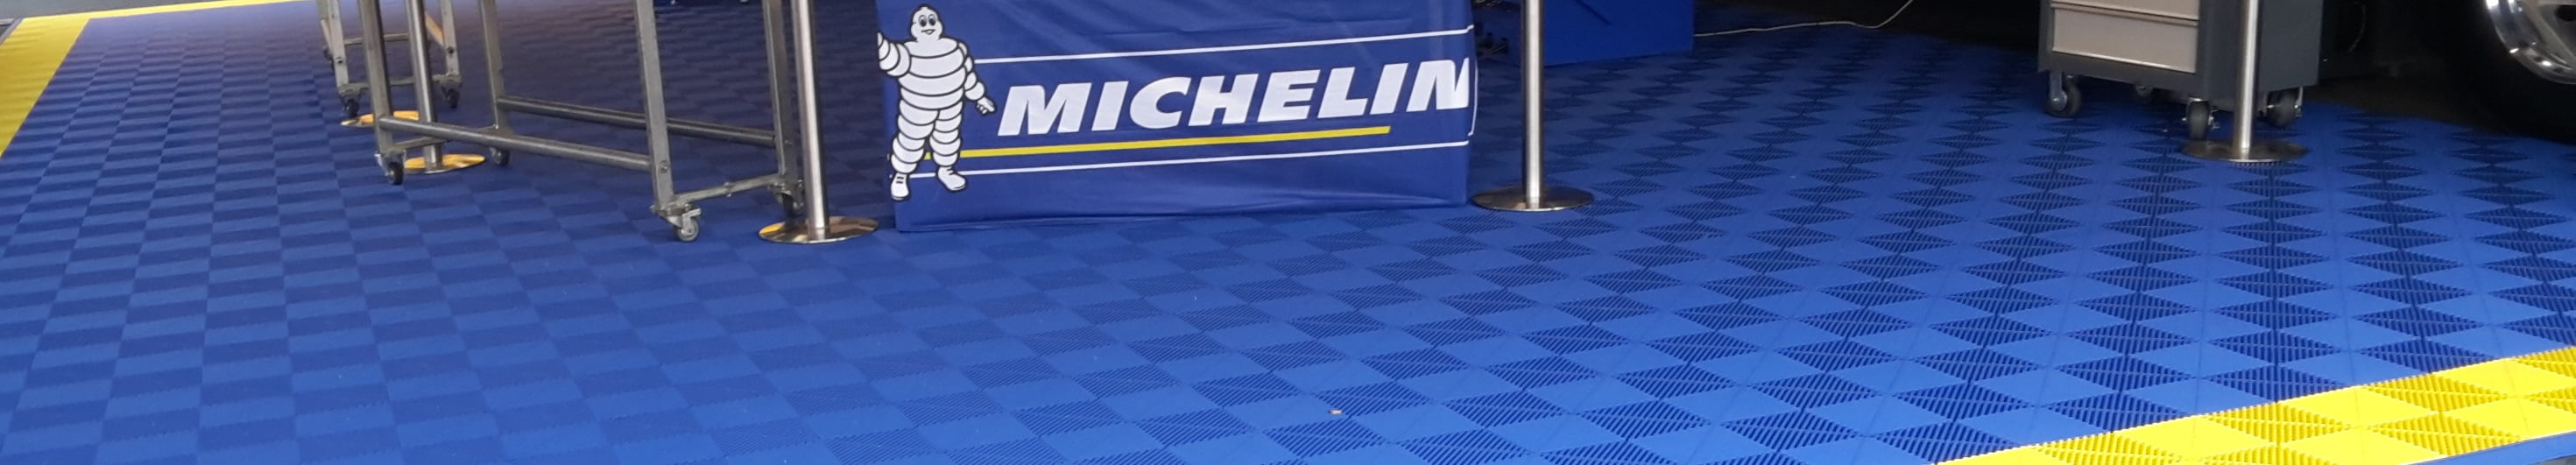 Michelin fait confiance aux dalles de sol Polydal